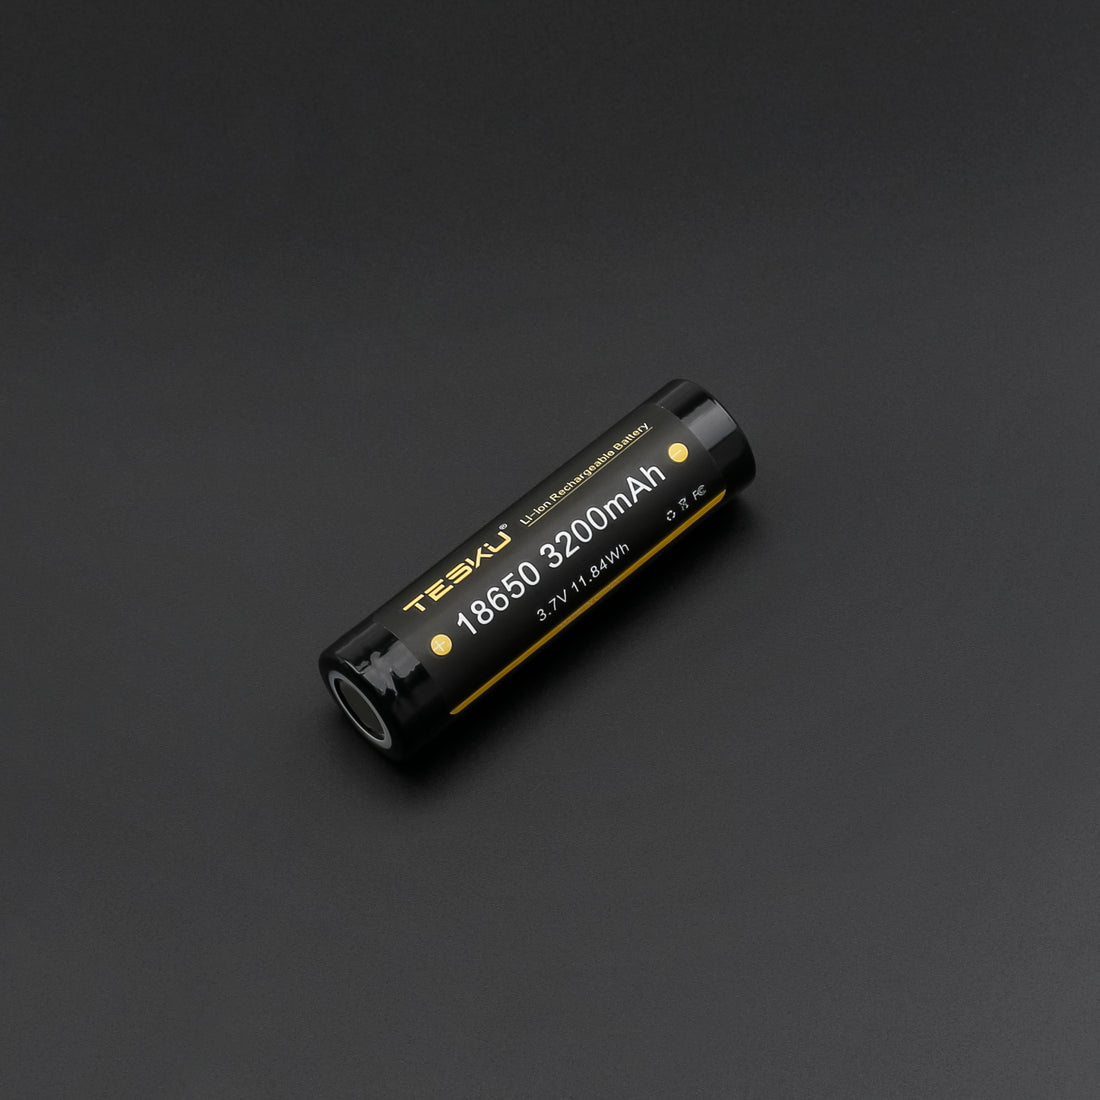 18650 Li-ion Battery for Lightsaber